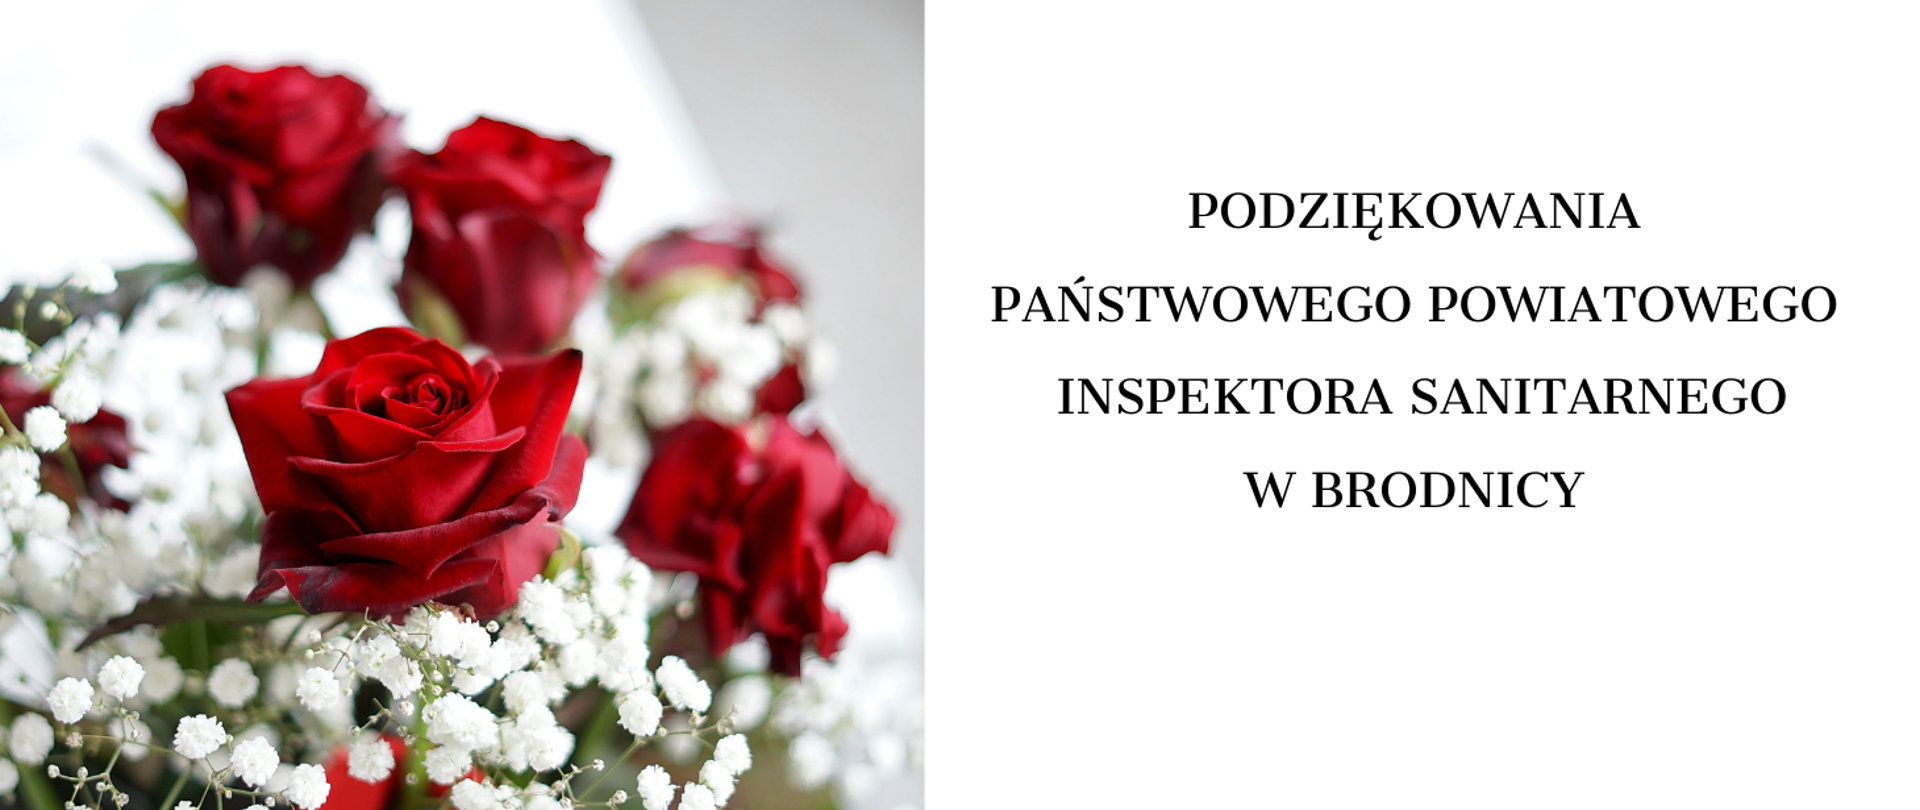 Podziękowania Państwowego Powiatowego Inspektora Sanitarnego w Brodnicy. Bukiet róż. 